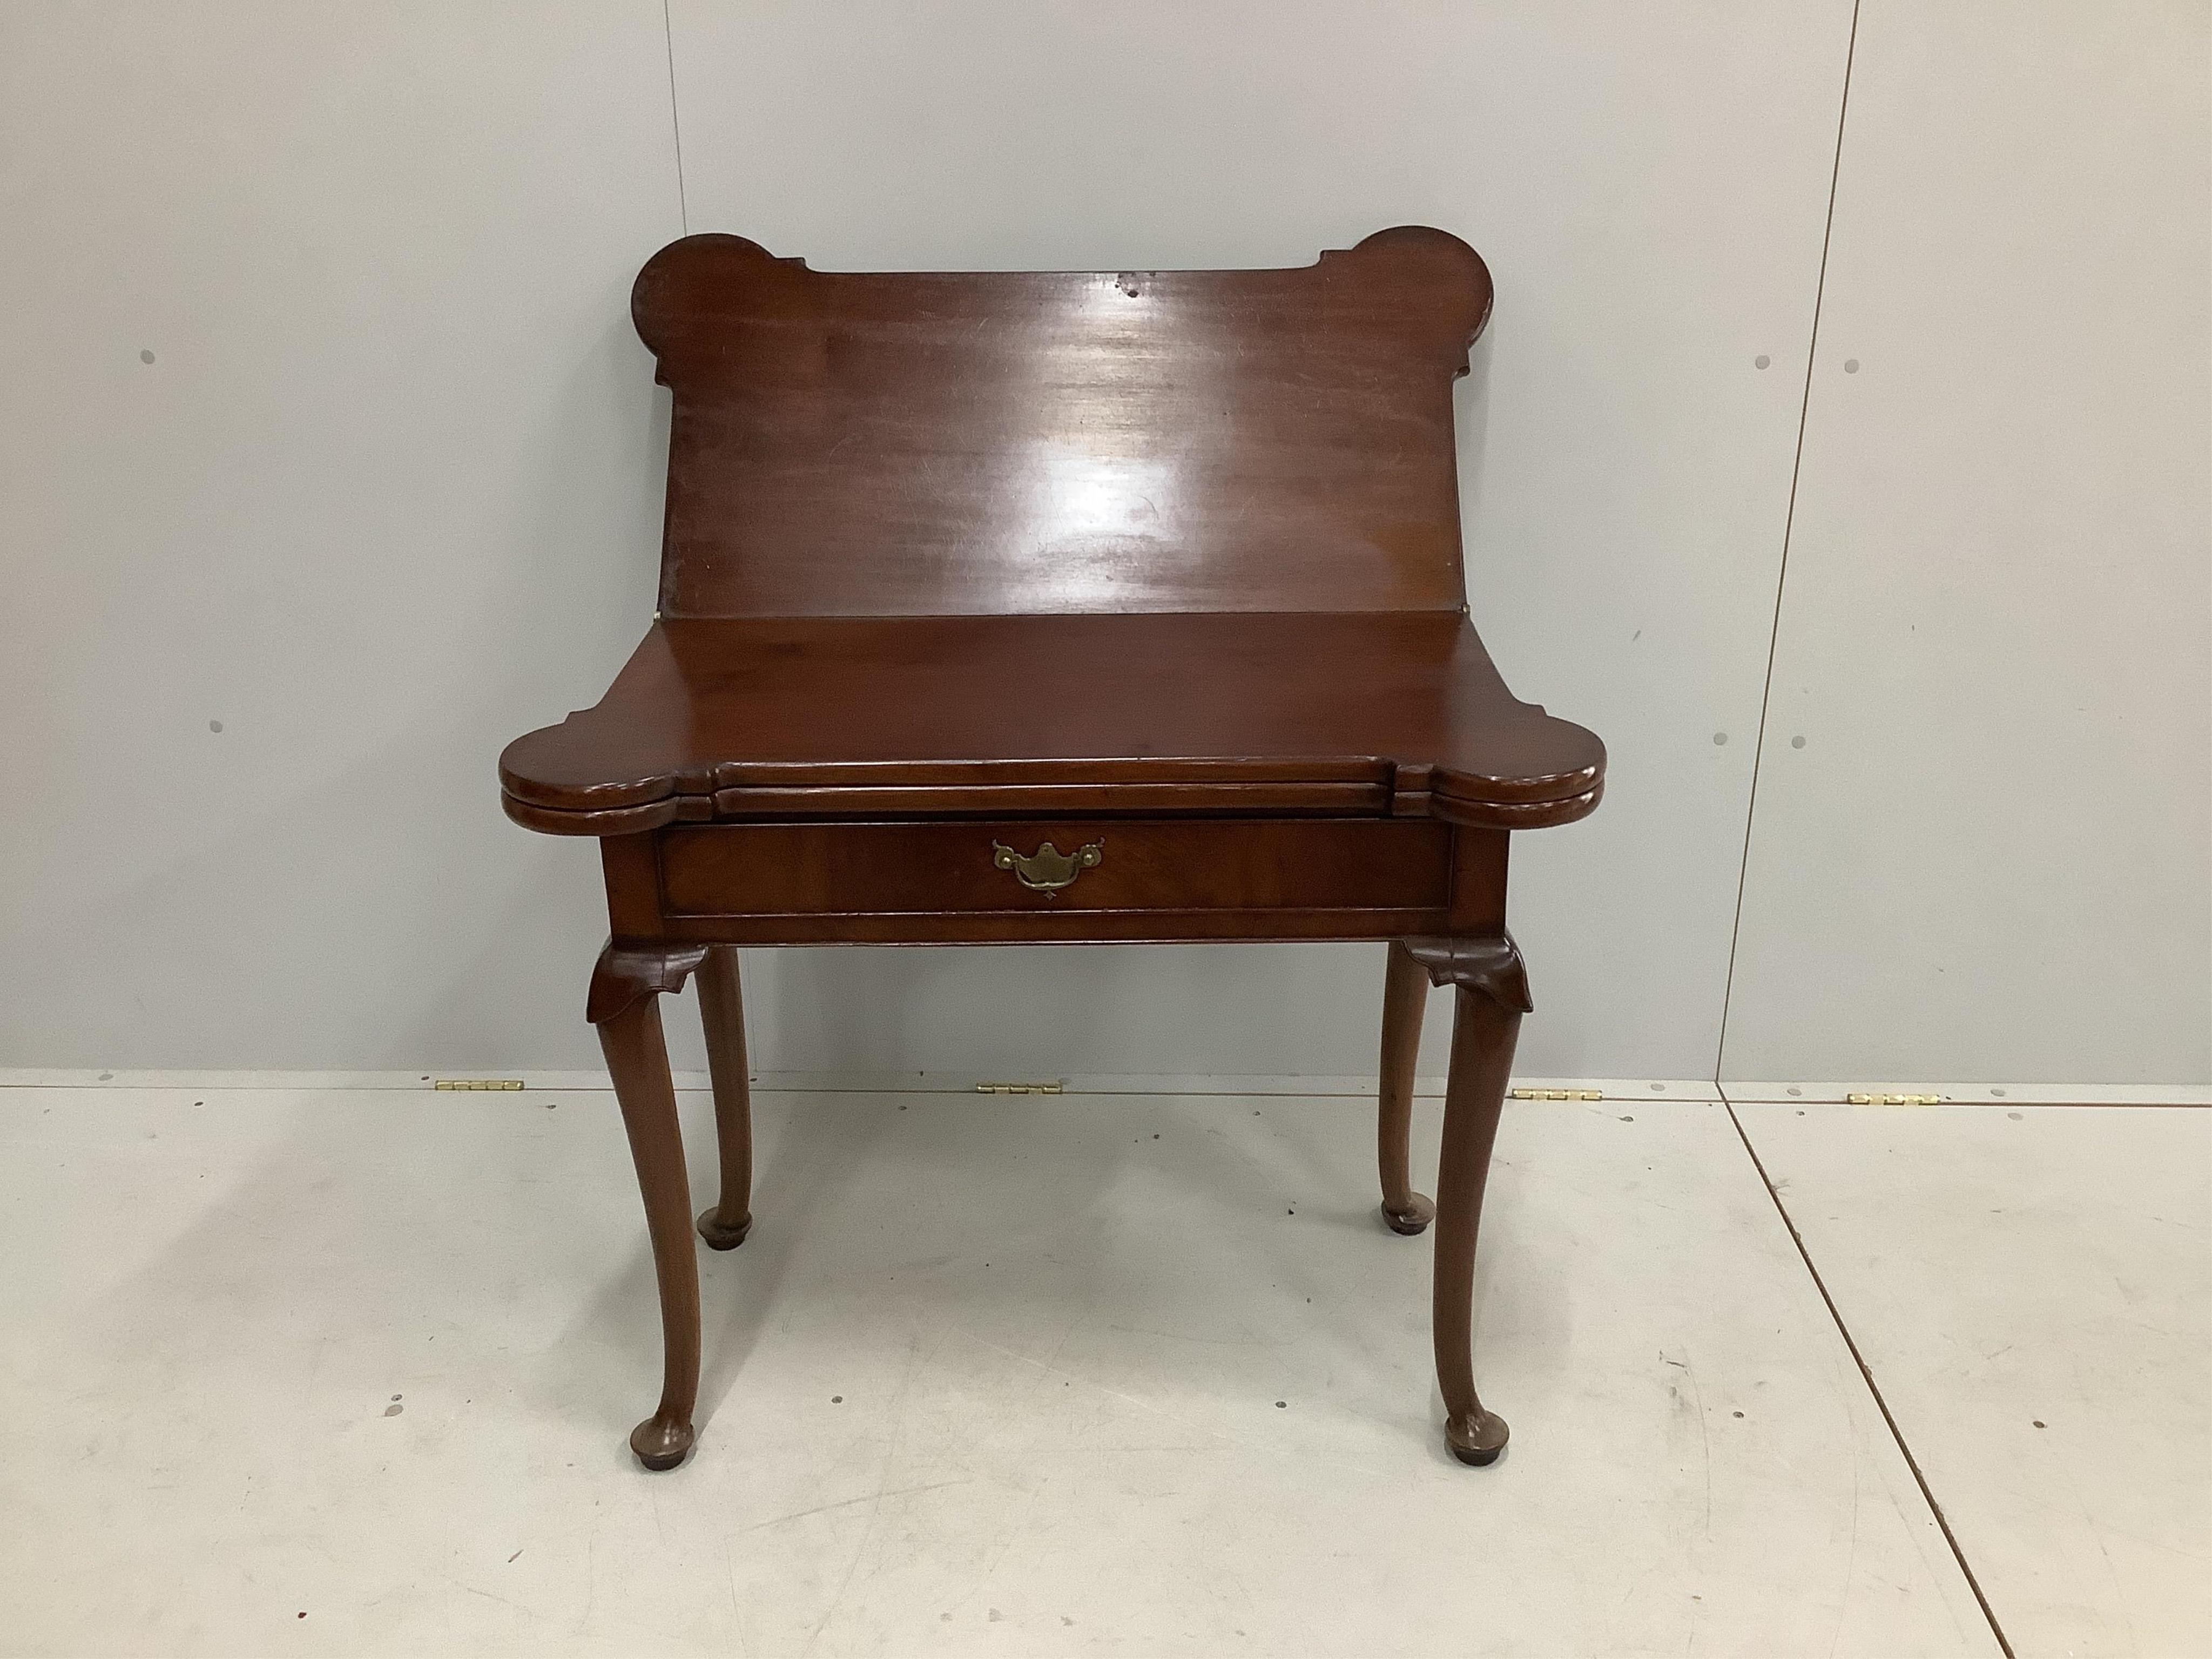 An 18th century mahogany double folding tea / card table, width 90cm, depth 45cm, height 74cm. Condition - fair